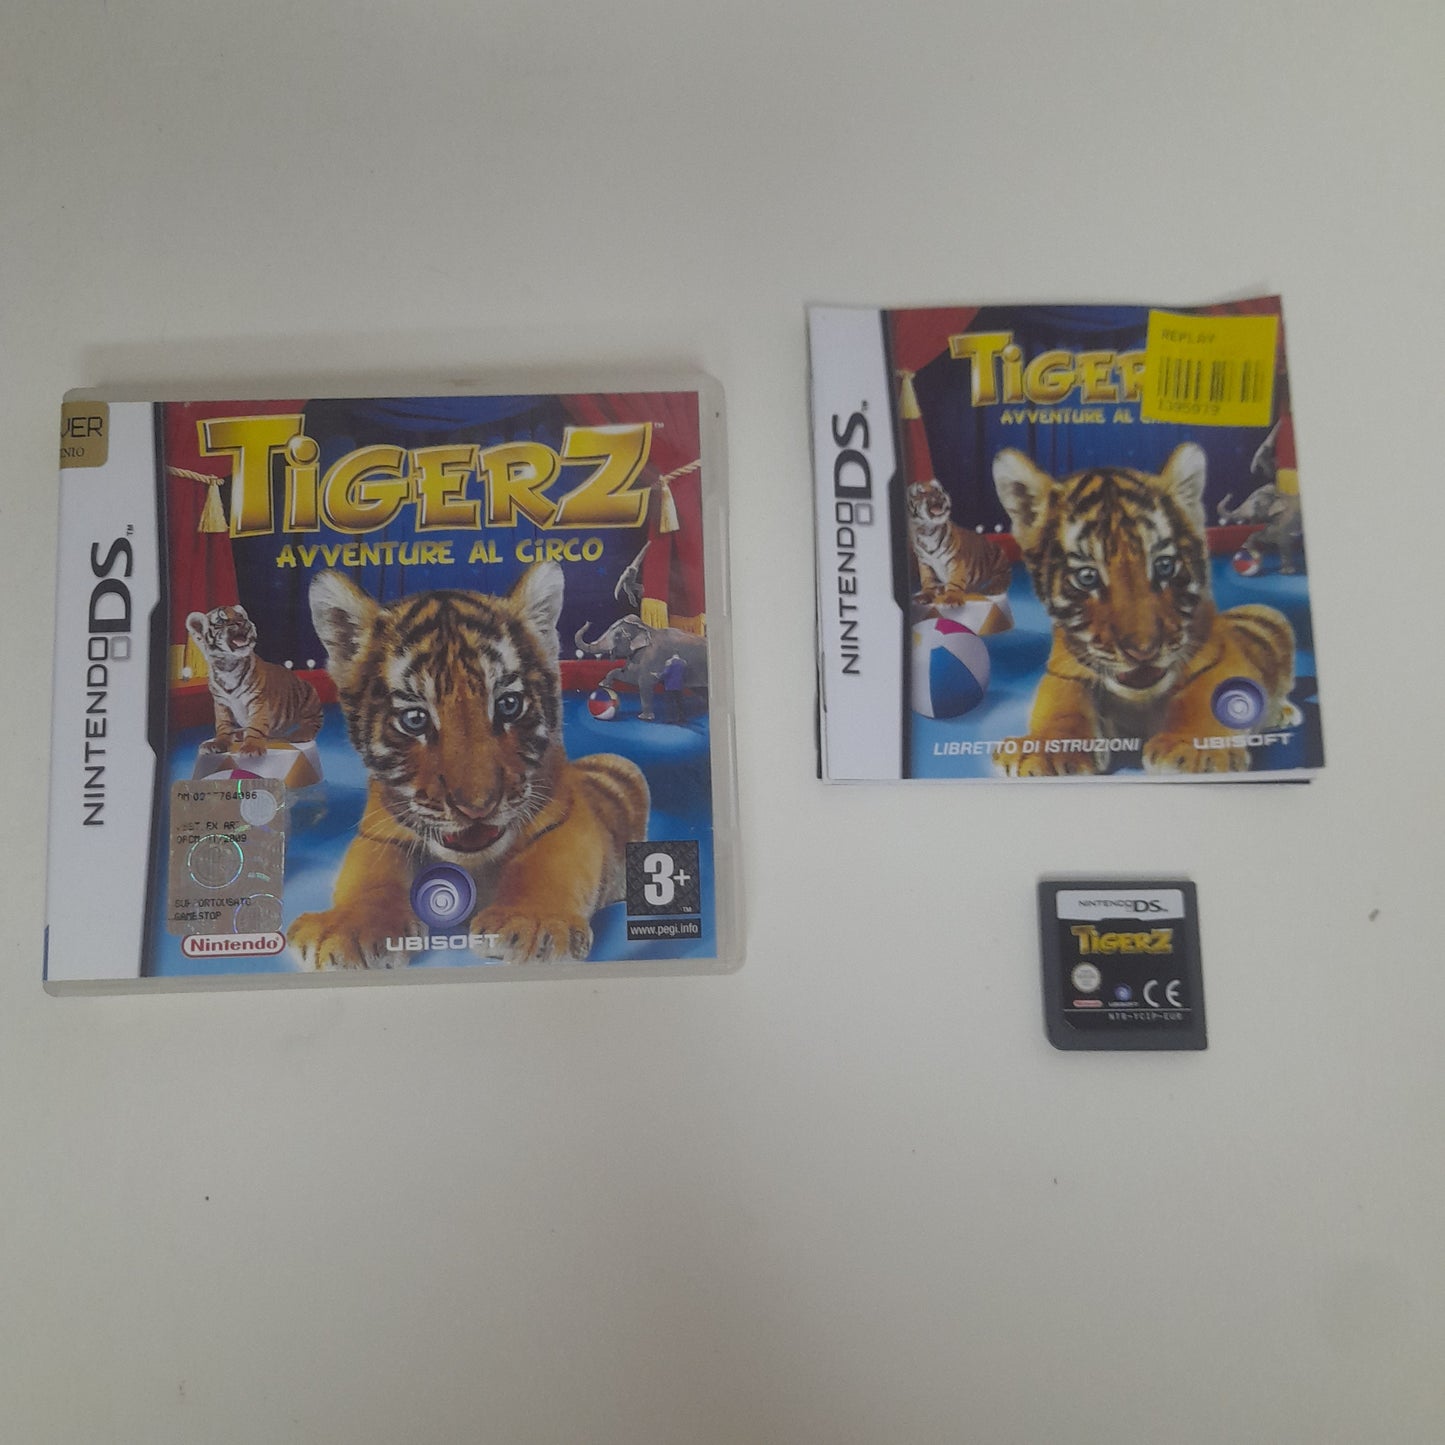 Tigerz - Aventures au Cirque - Nintendo DS